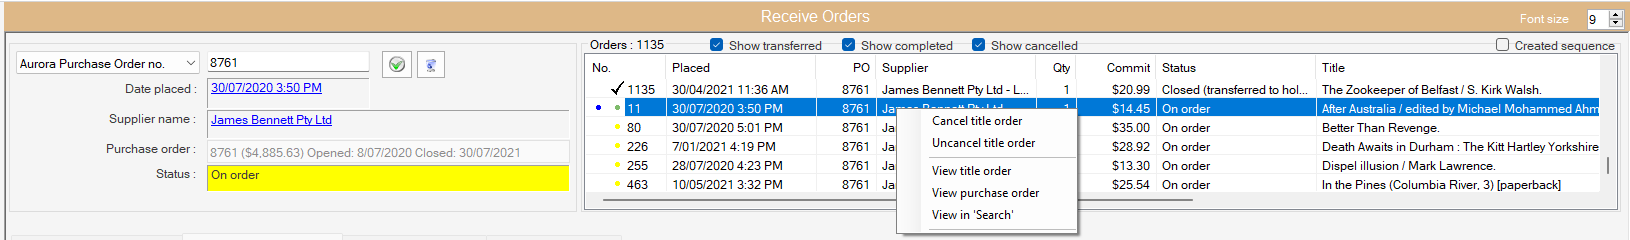 Receive Orders - Order List